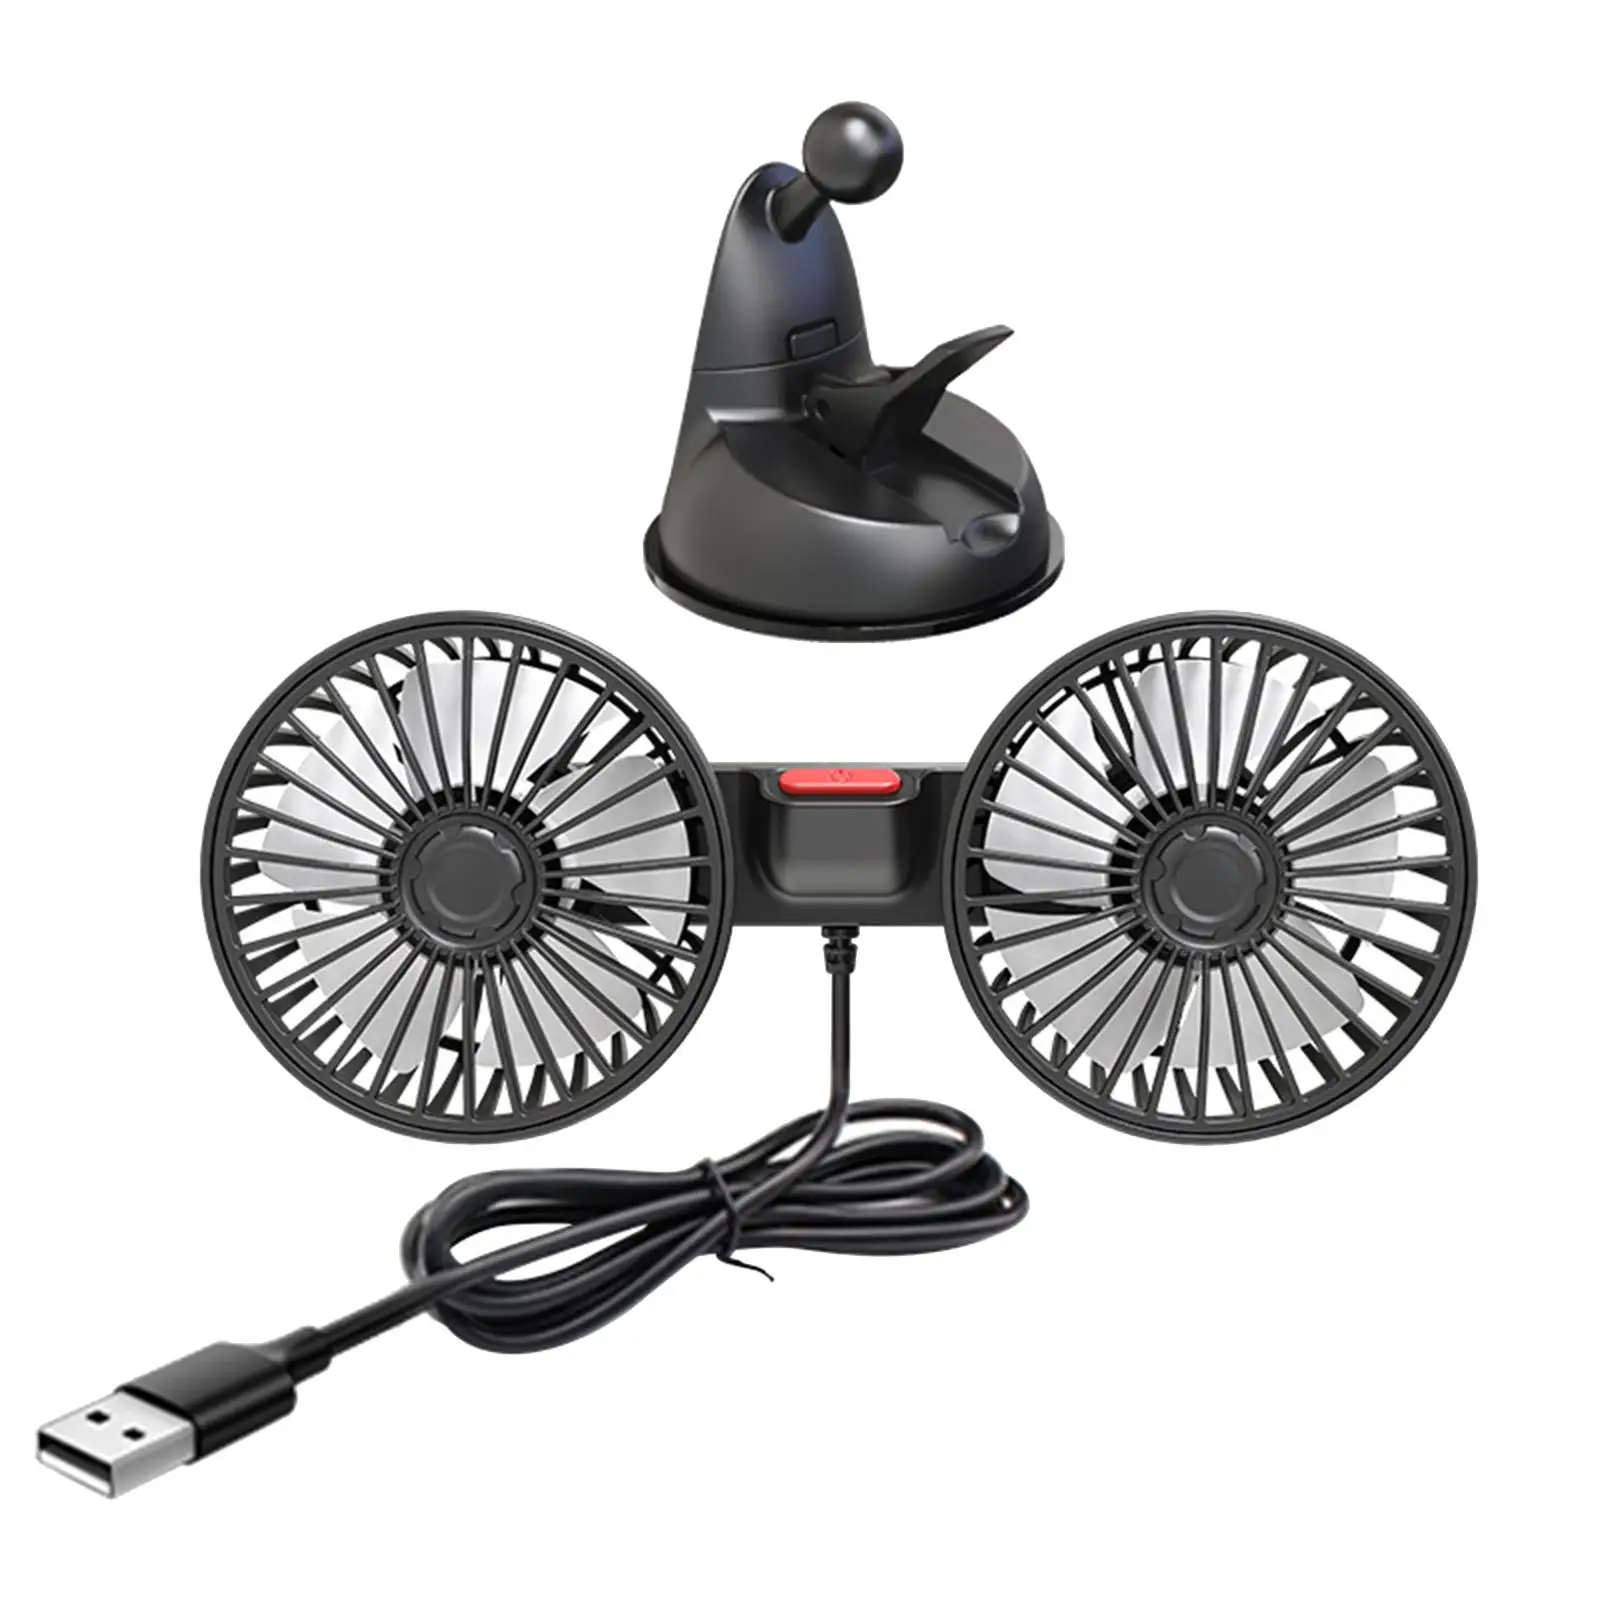 Car Cooling Fan ABS Universal Strong Wind USB 360 Degree Adjustable Desk Fan